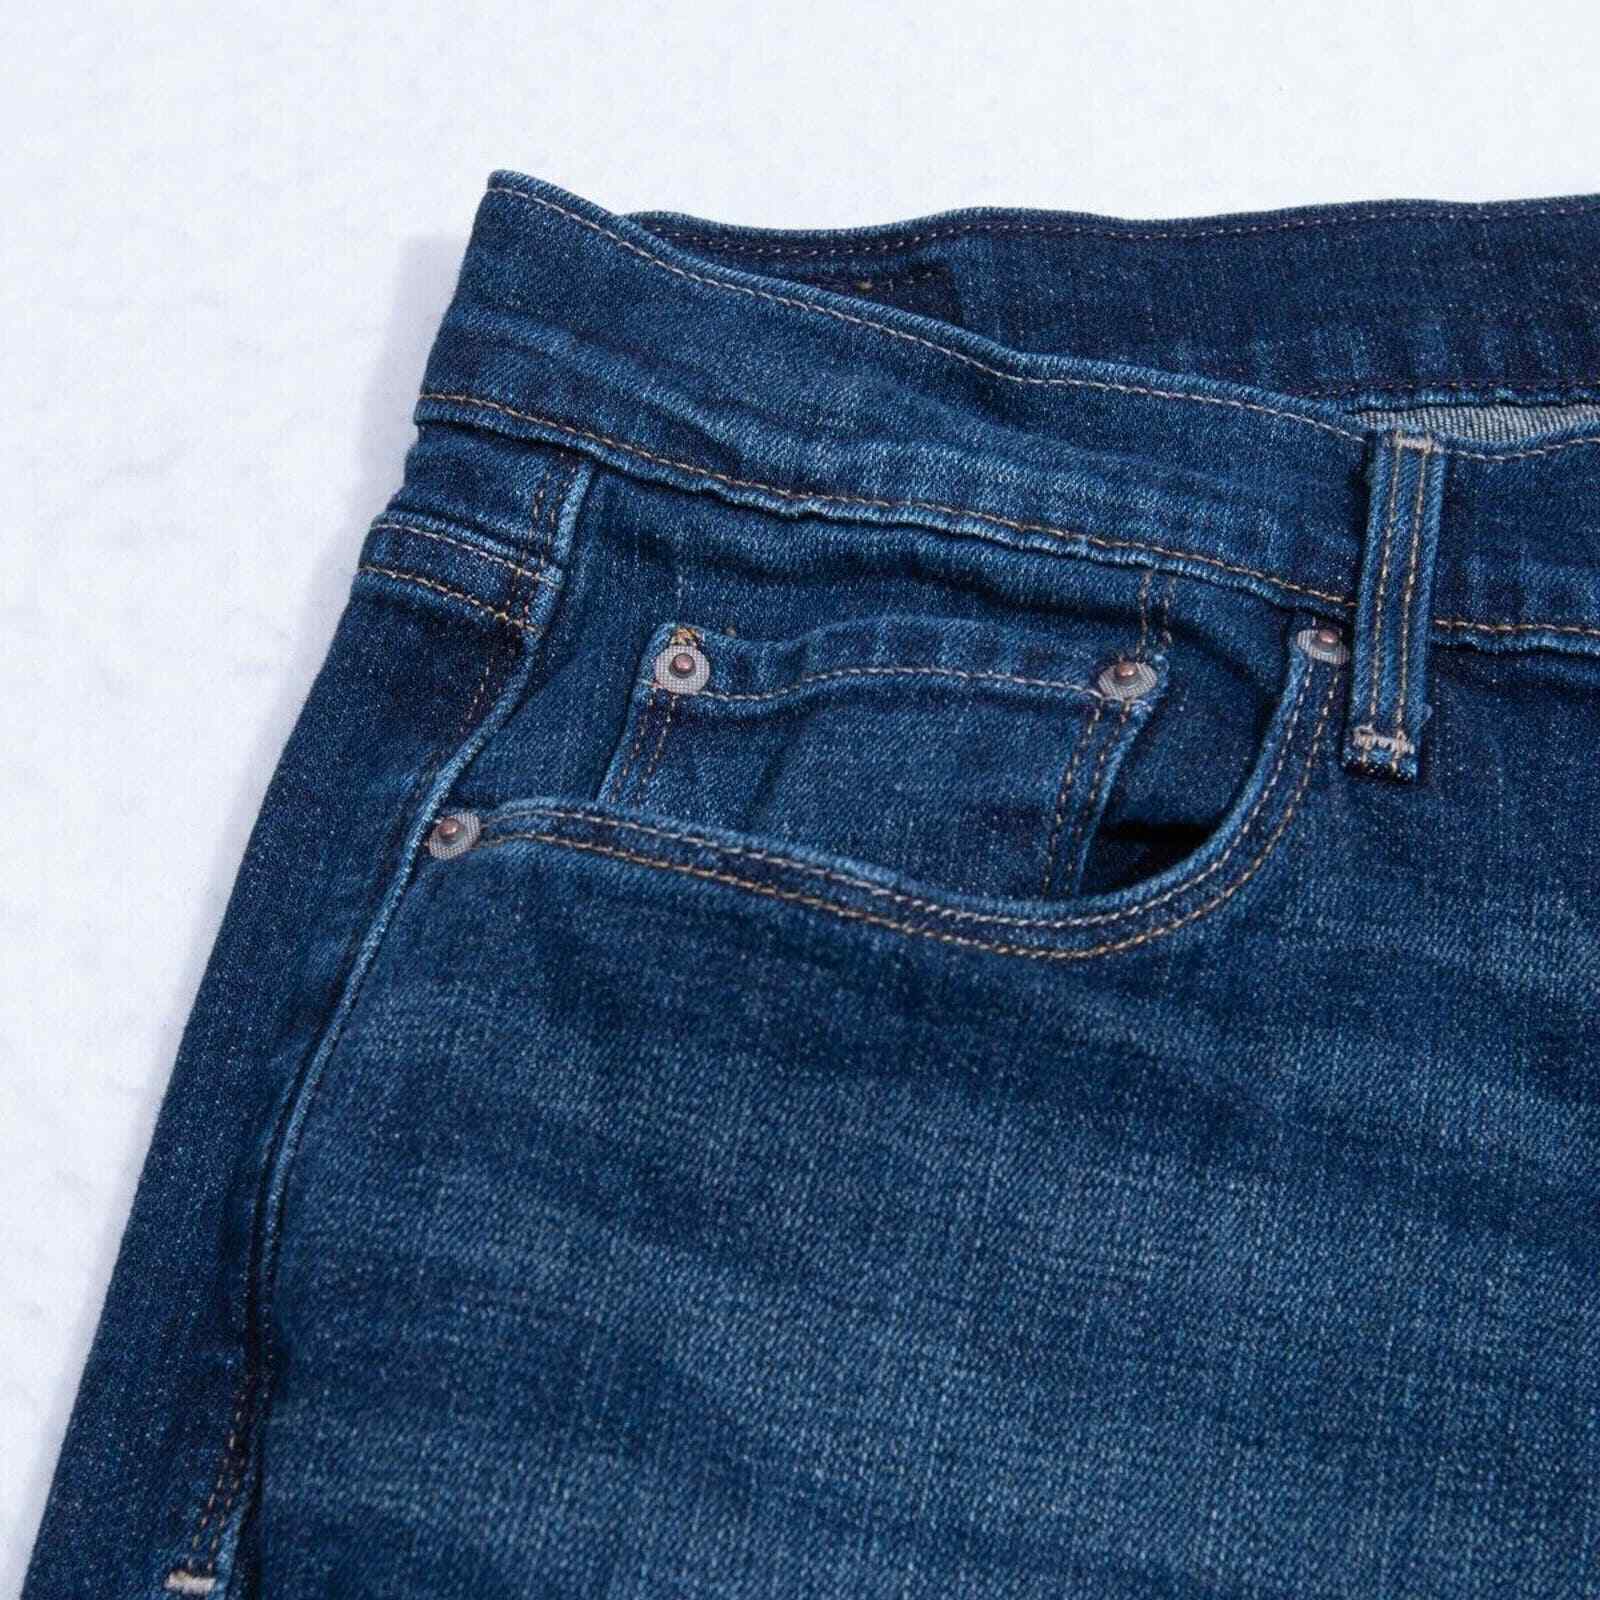 Levis 515 Jeans Womens 10 - 30x34 (31x32 actual) … - image 3